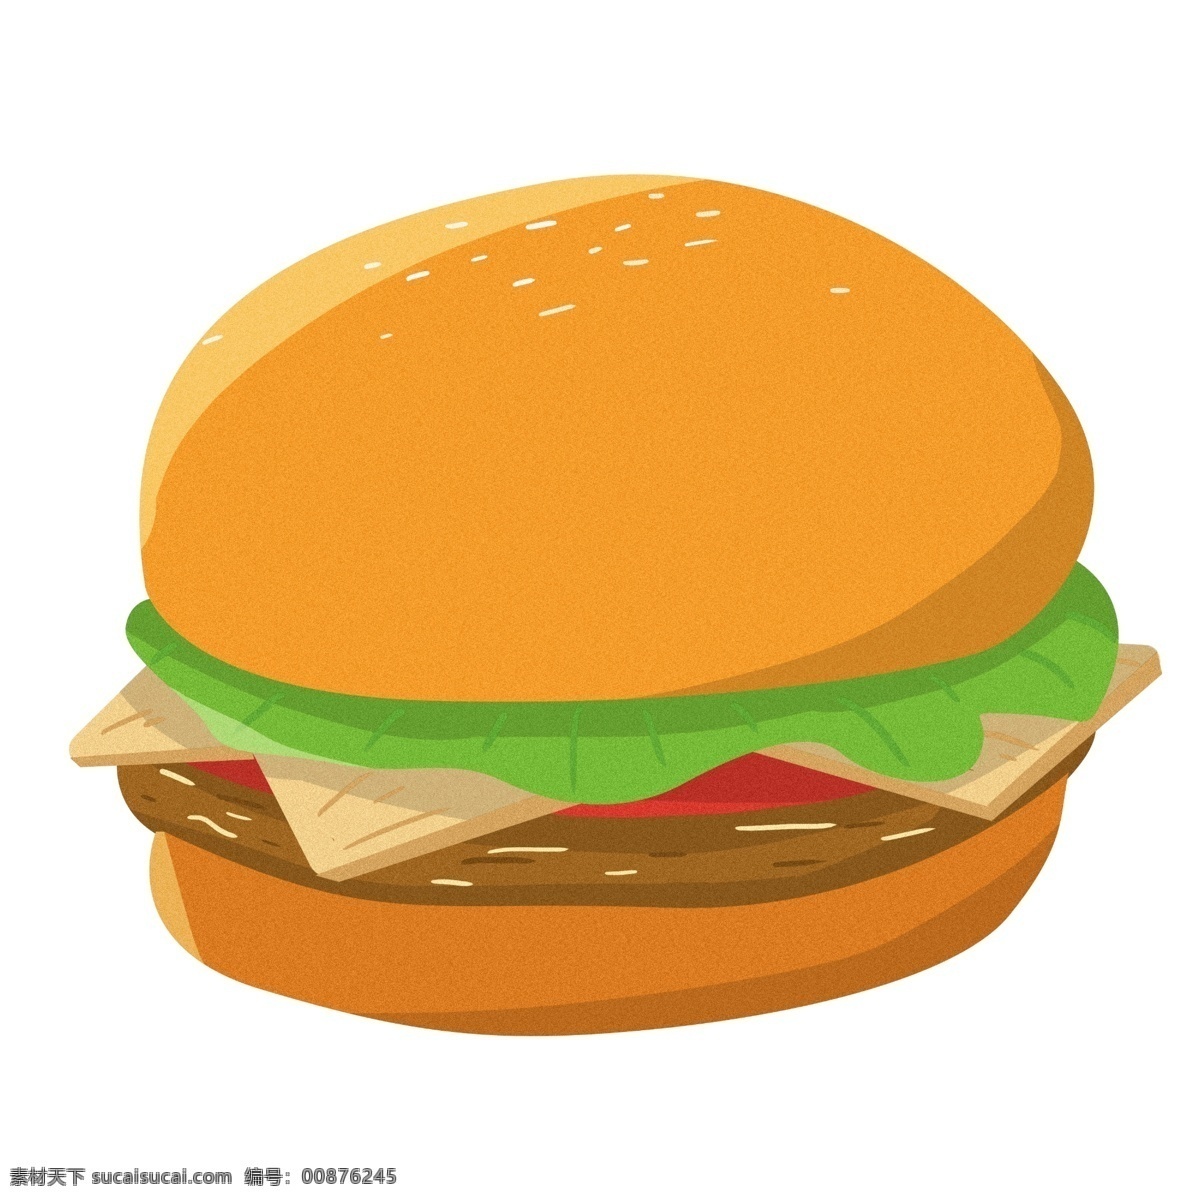 美味 香辣 汉堡 插图 食物 肯德基 快餐 汉堡插图 汉堡包 美味香辣汉堡 美味鸡腿汉堡